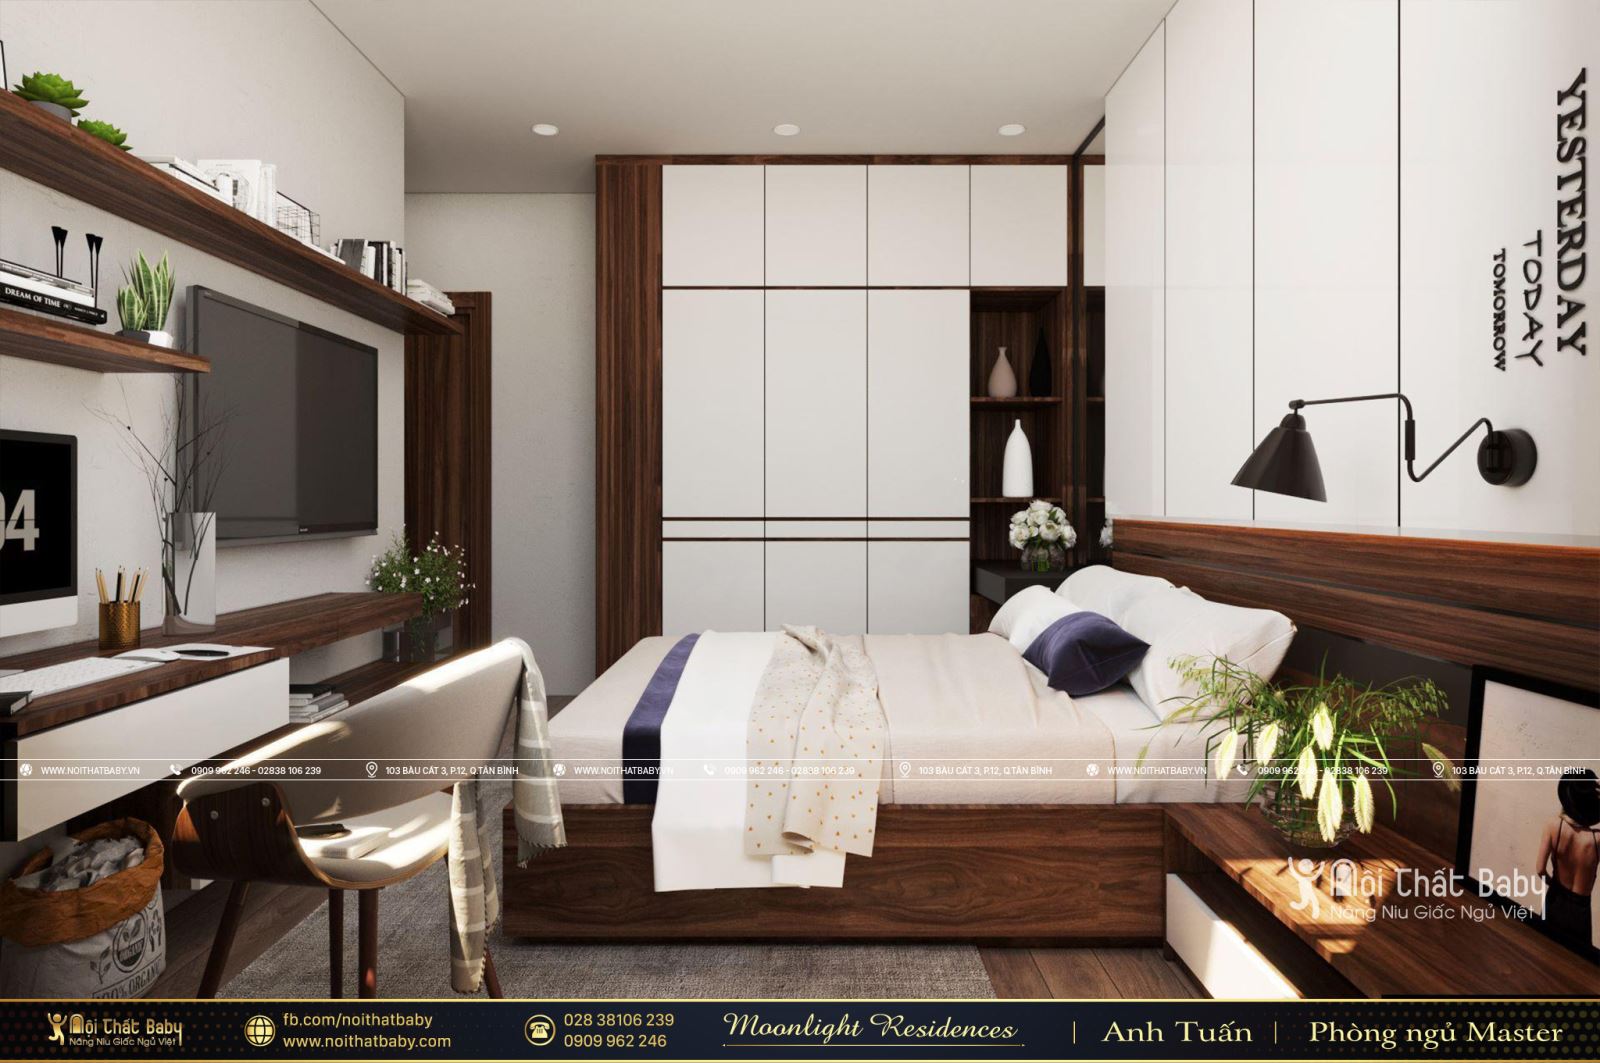 Tổng hợp các mẫu thiết kế nội thất chung cư Moonlight Residences